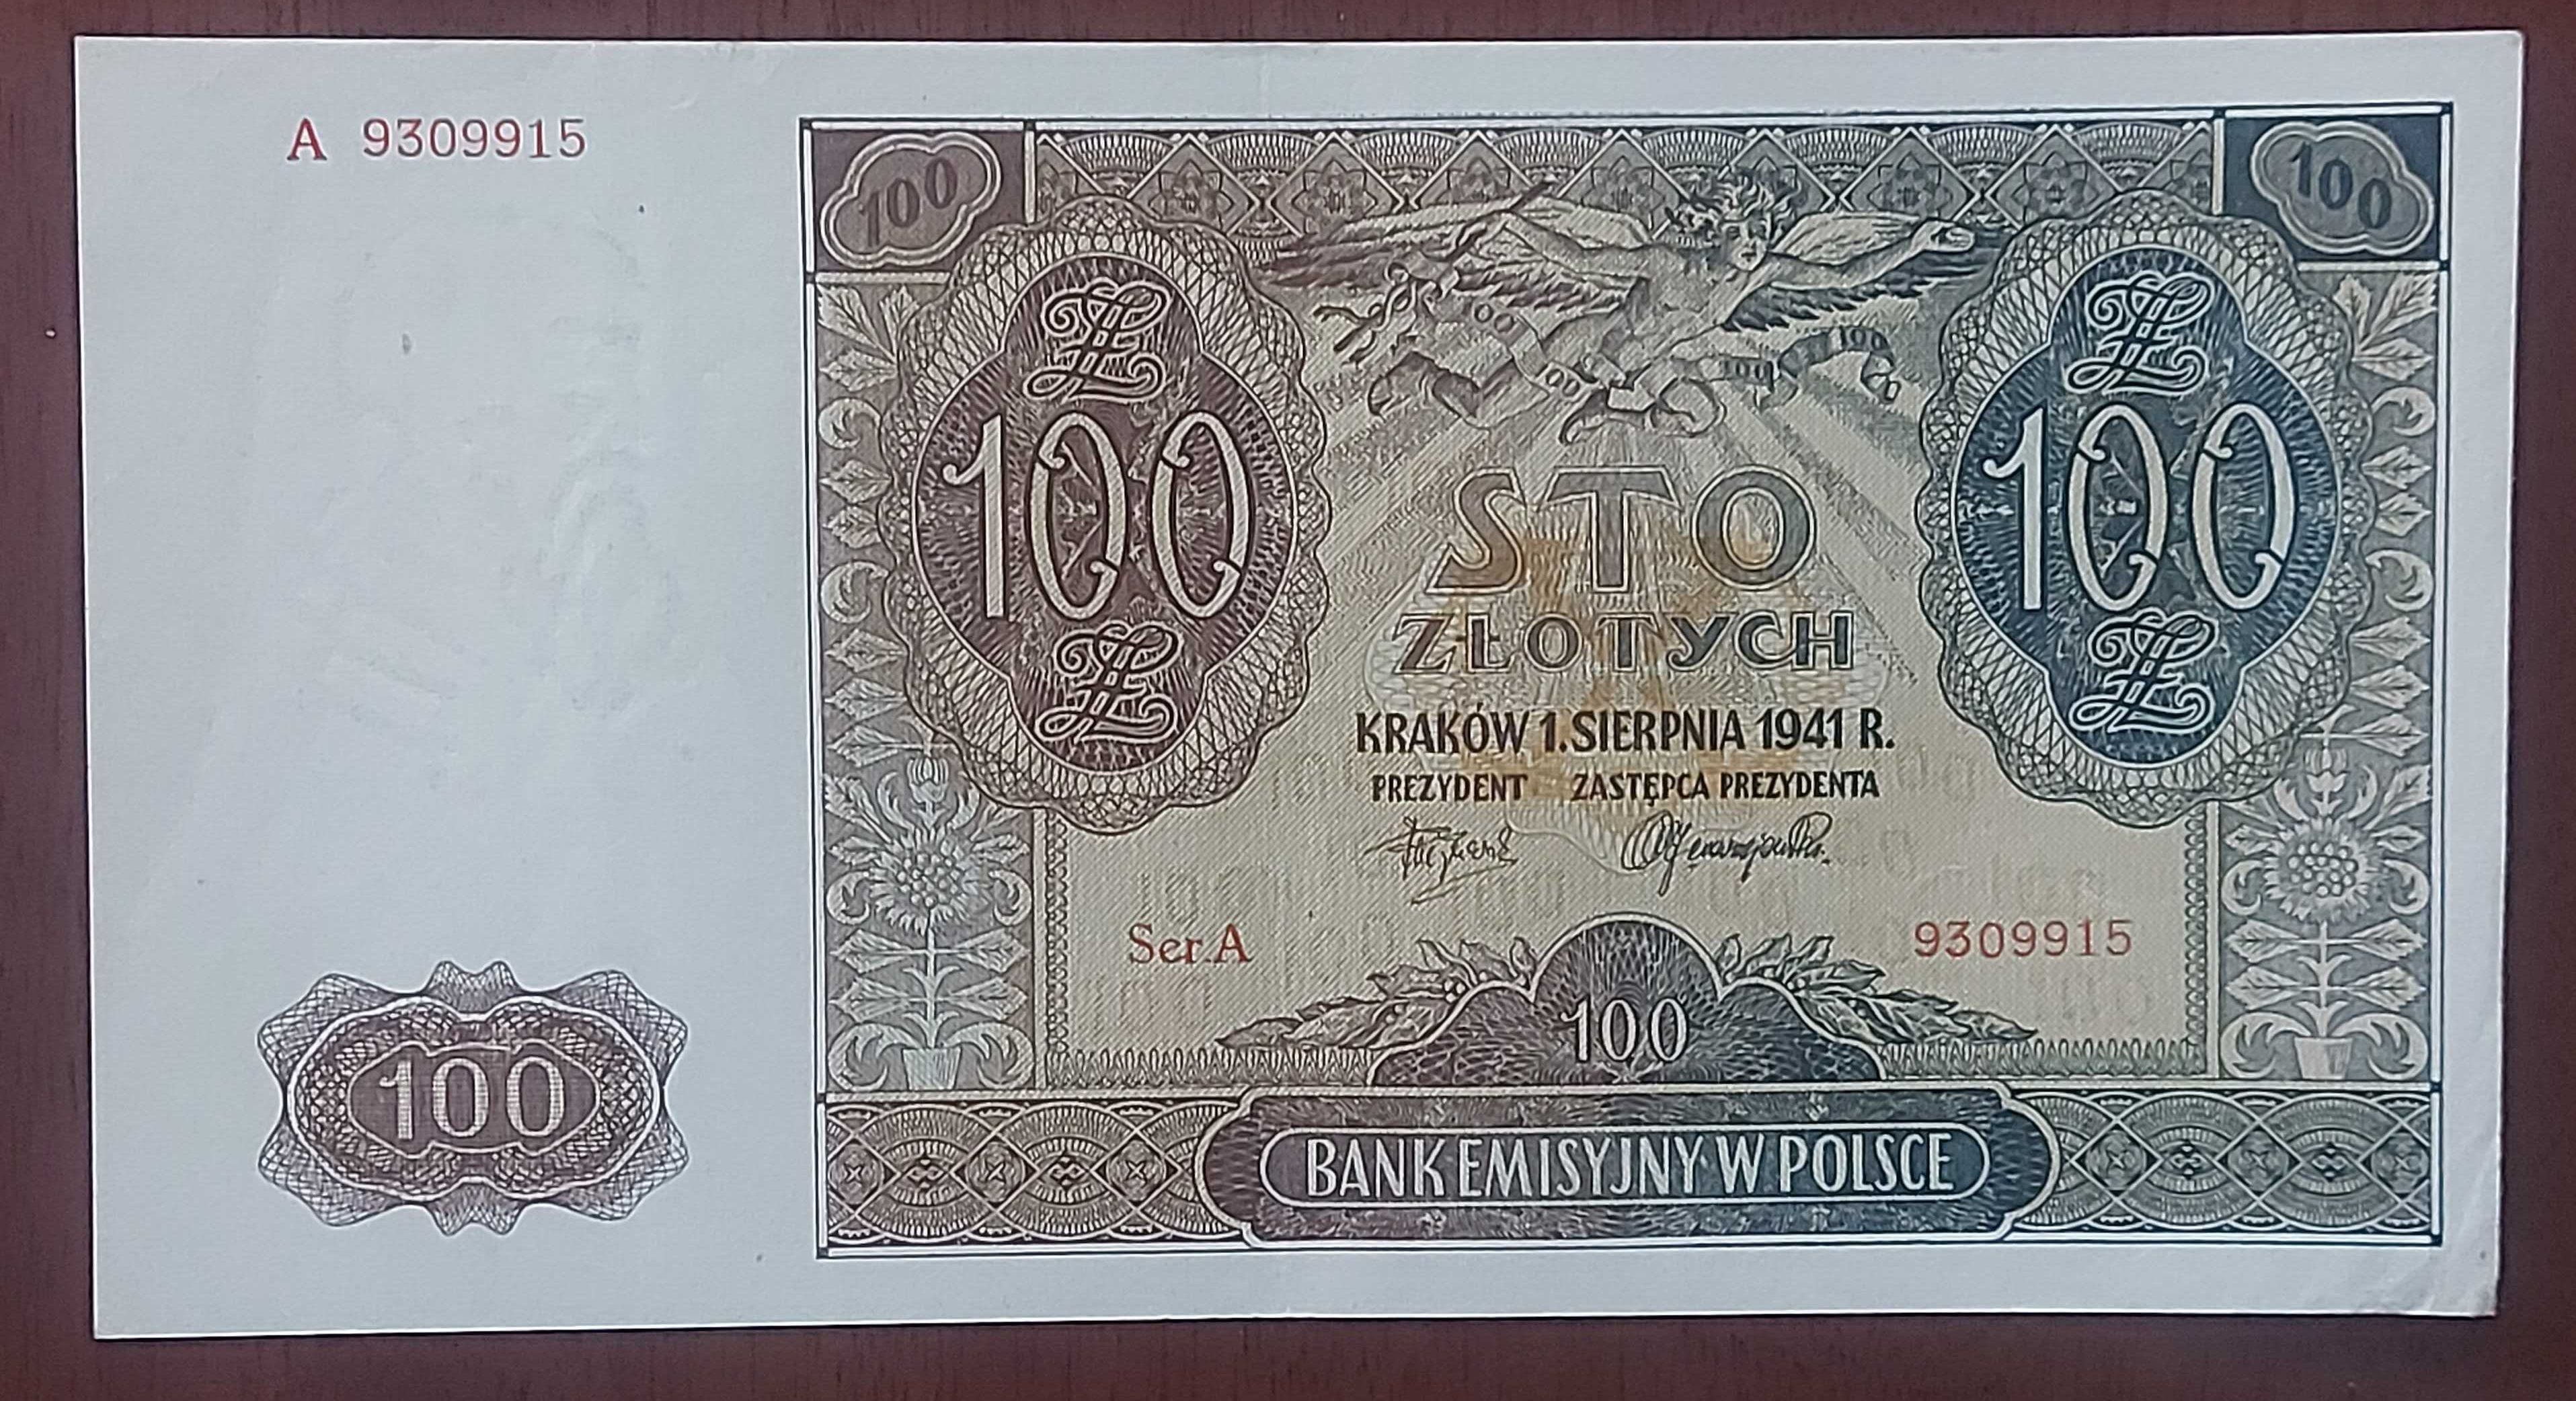 Banknot 100 złotych, emisja z datą 1941 rok.